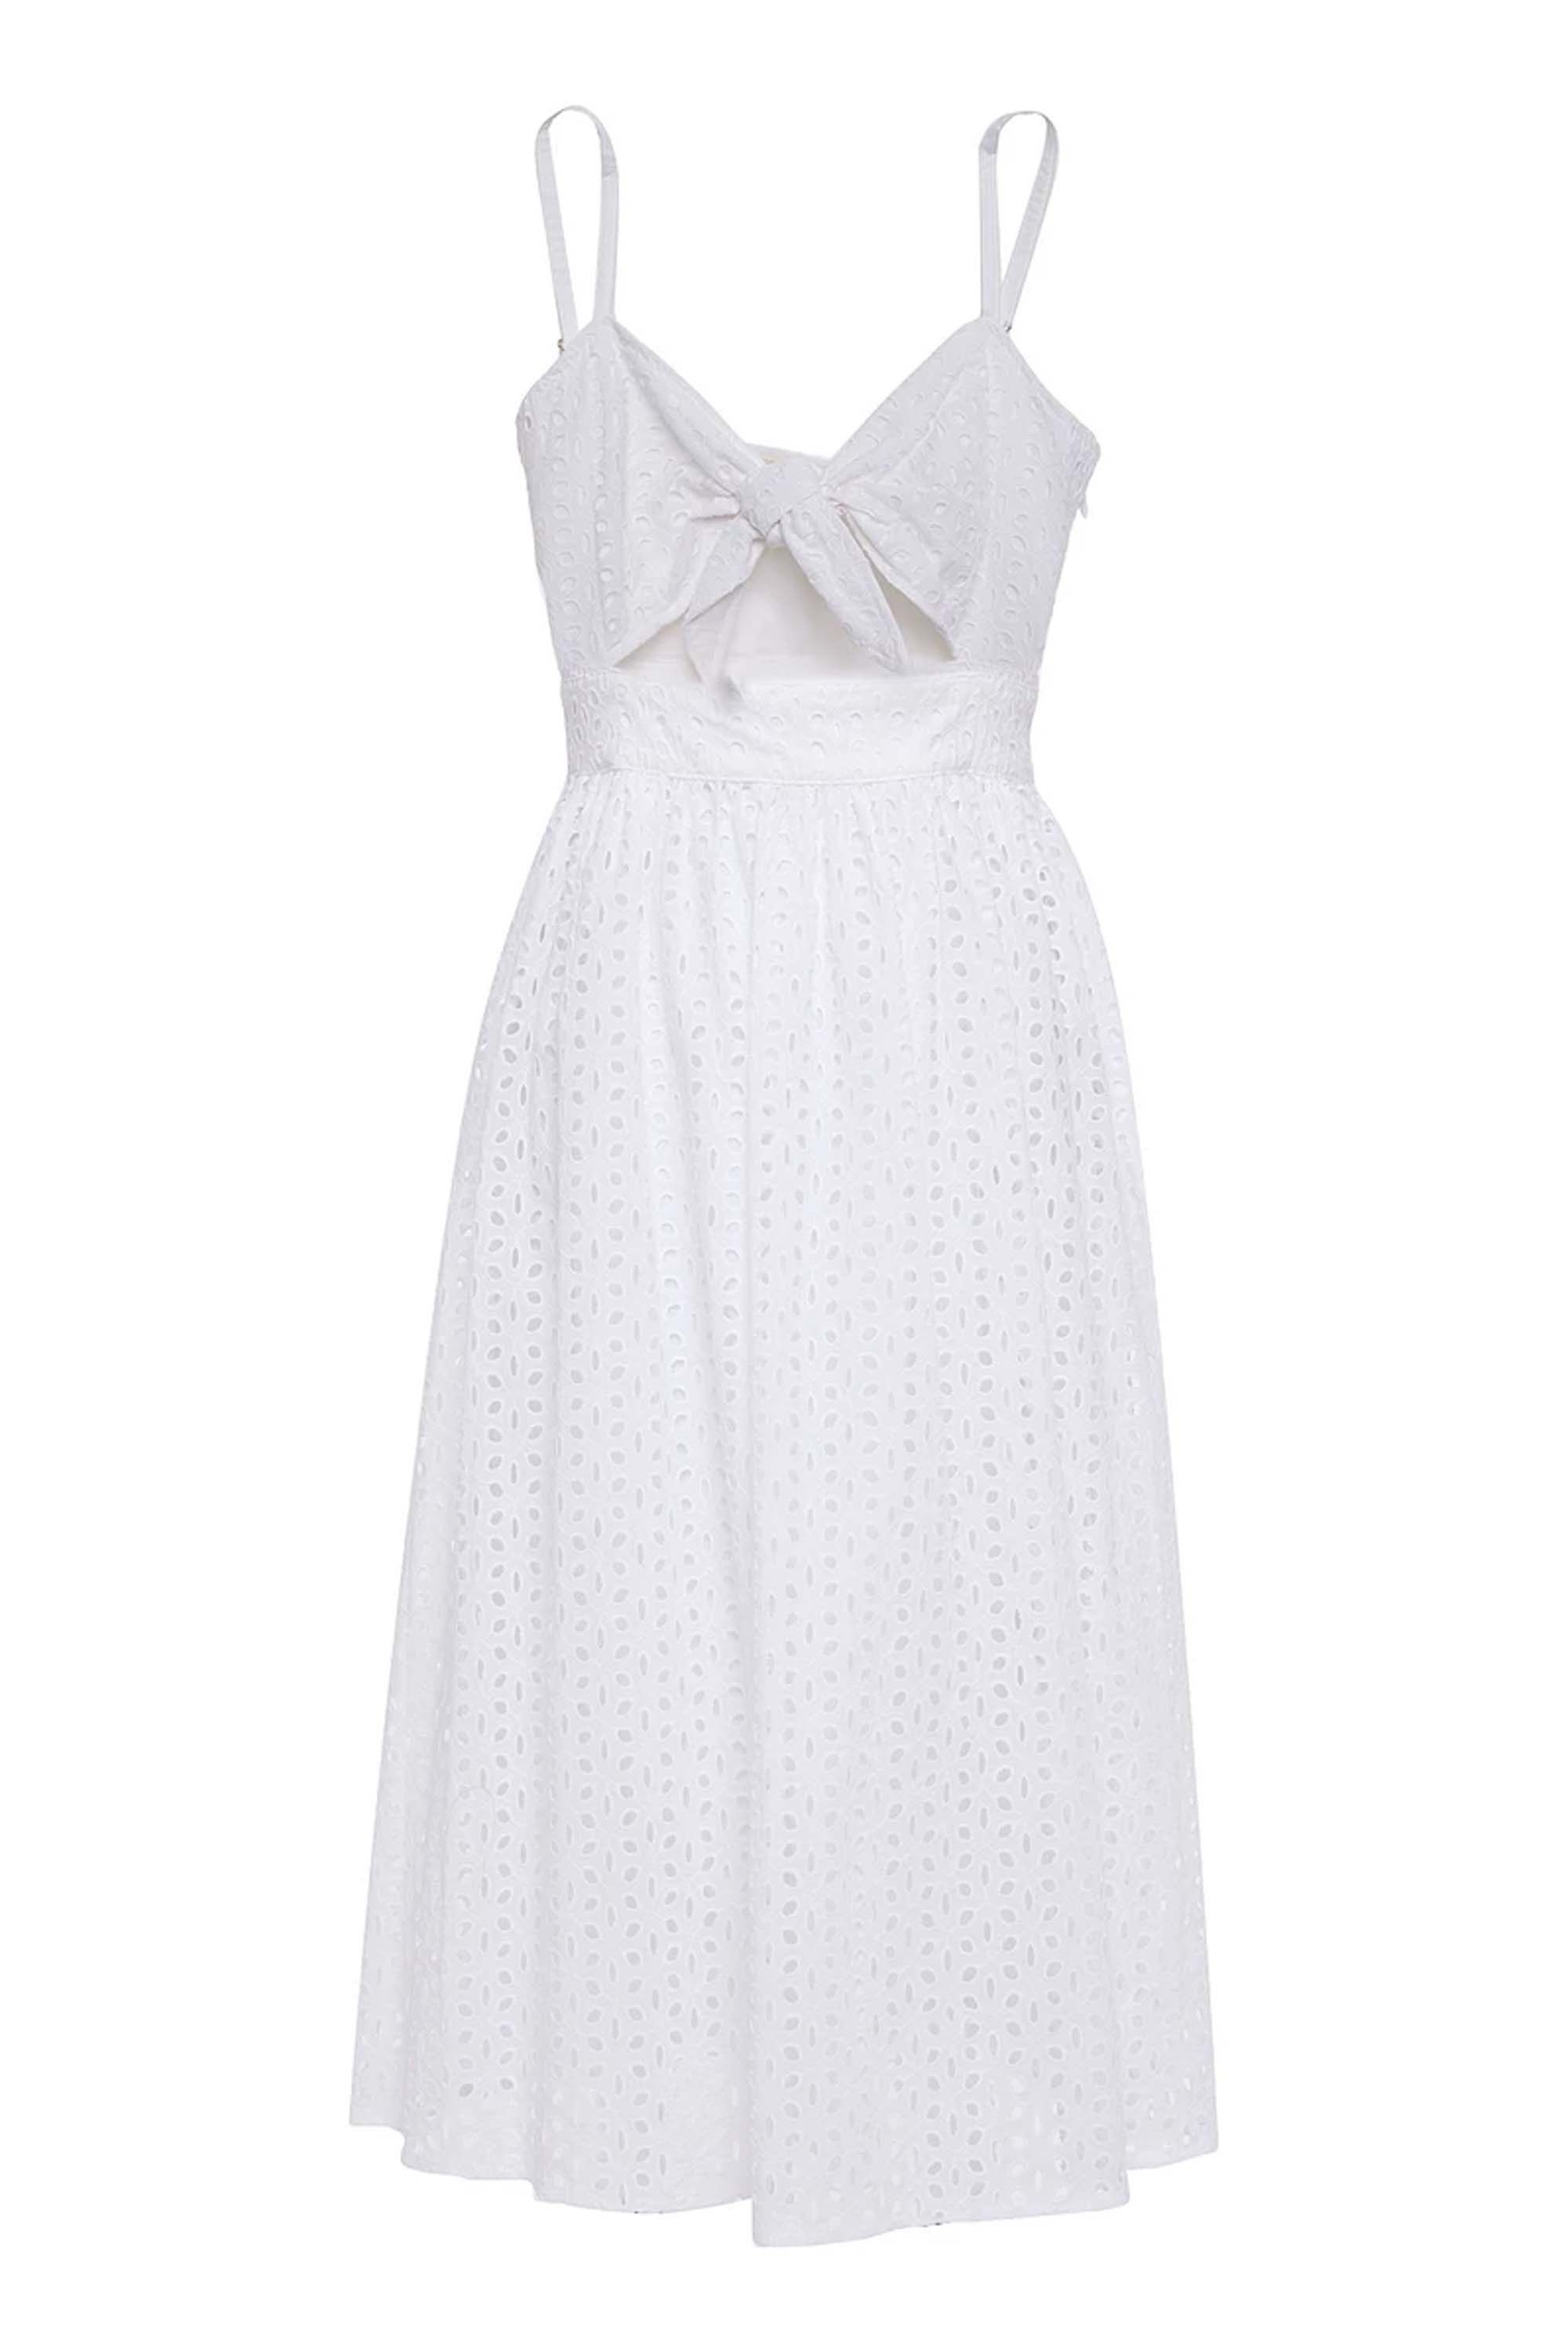 michael kors white summer dress